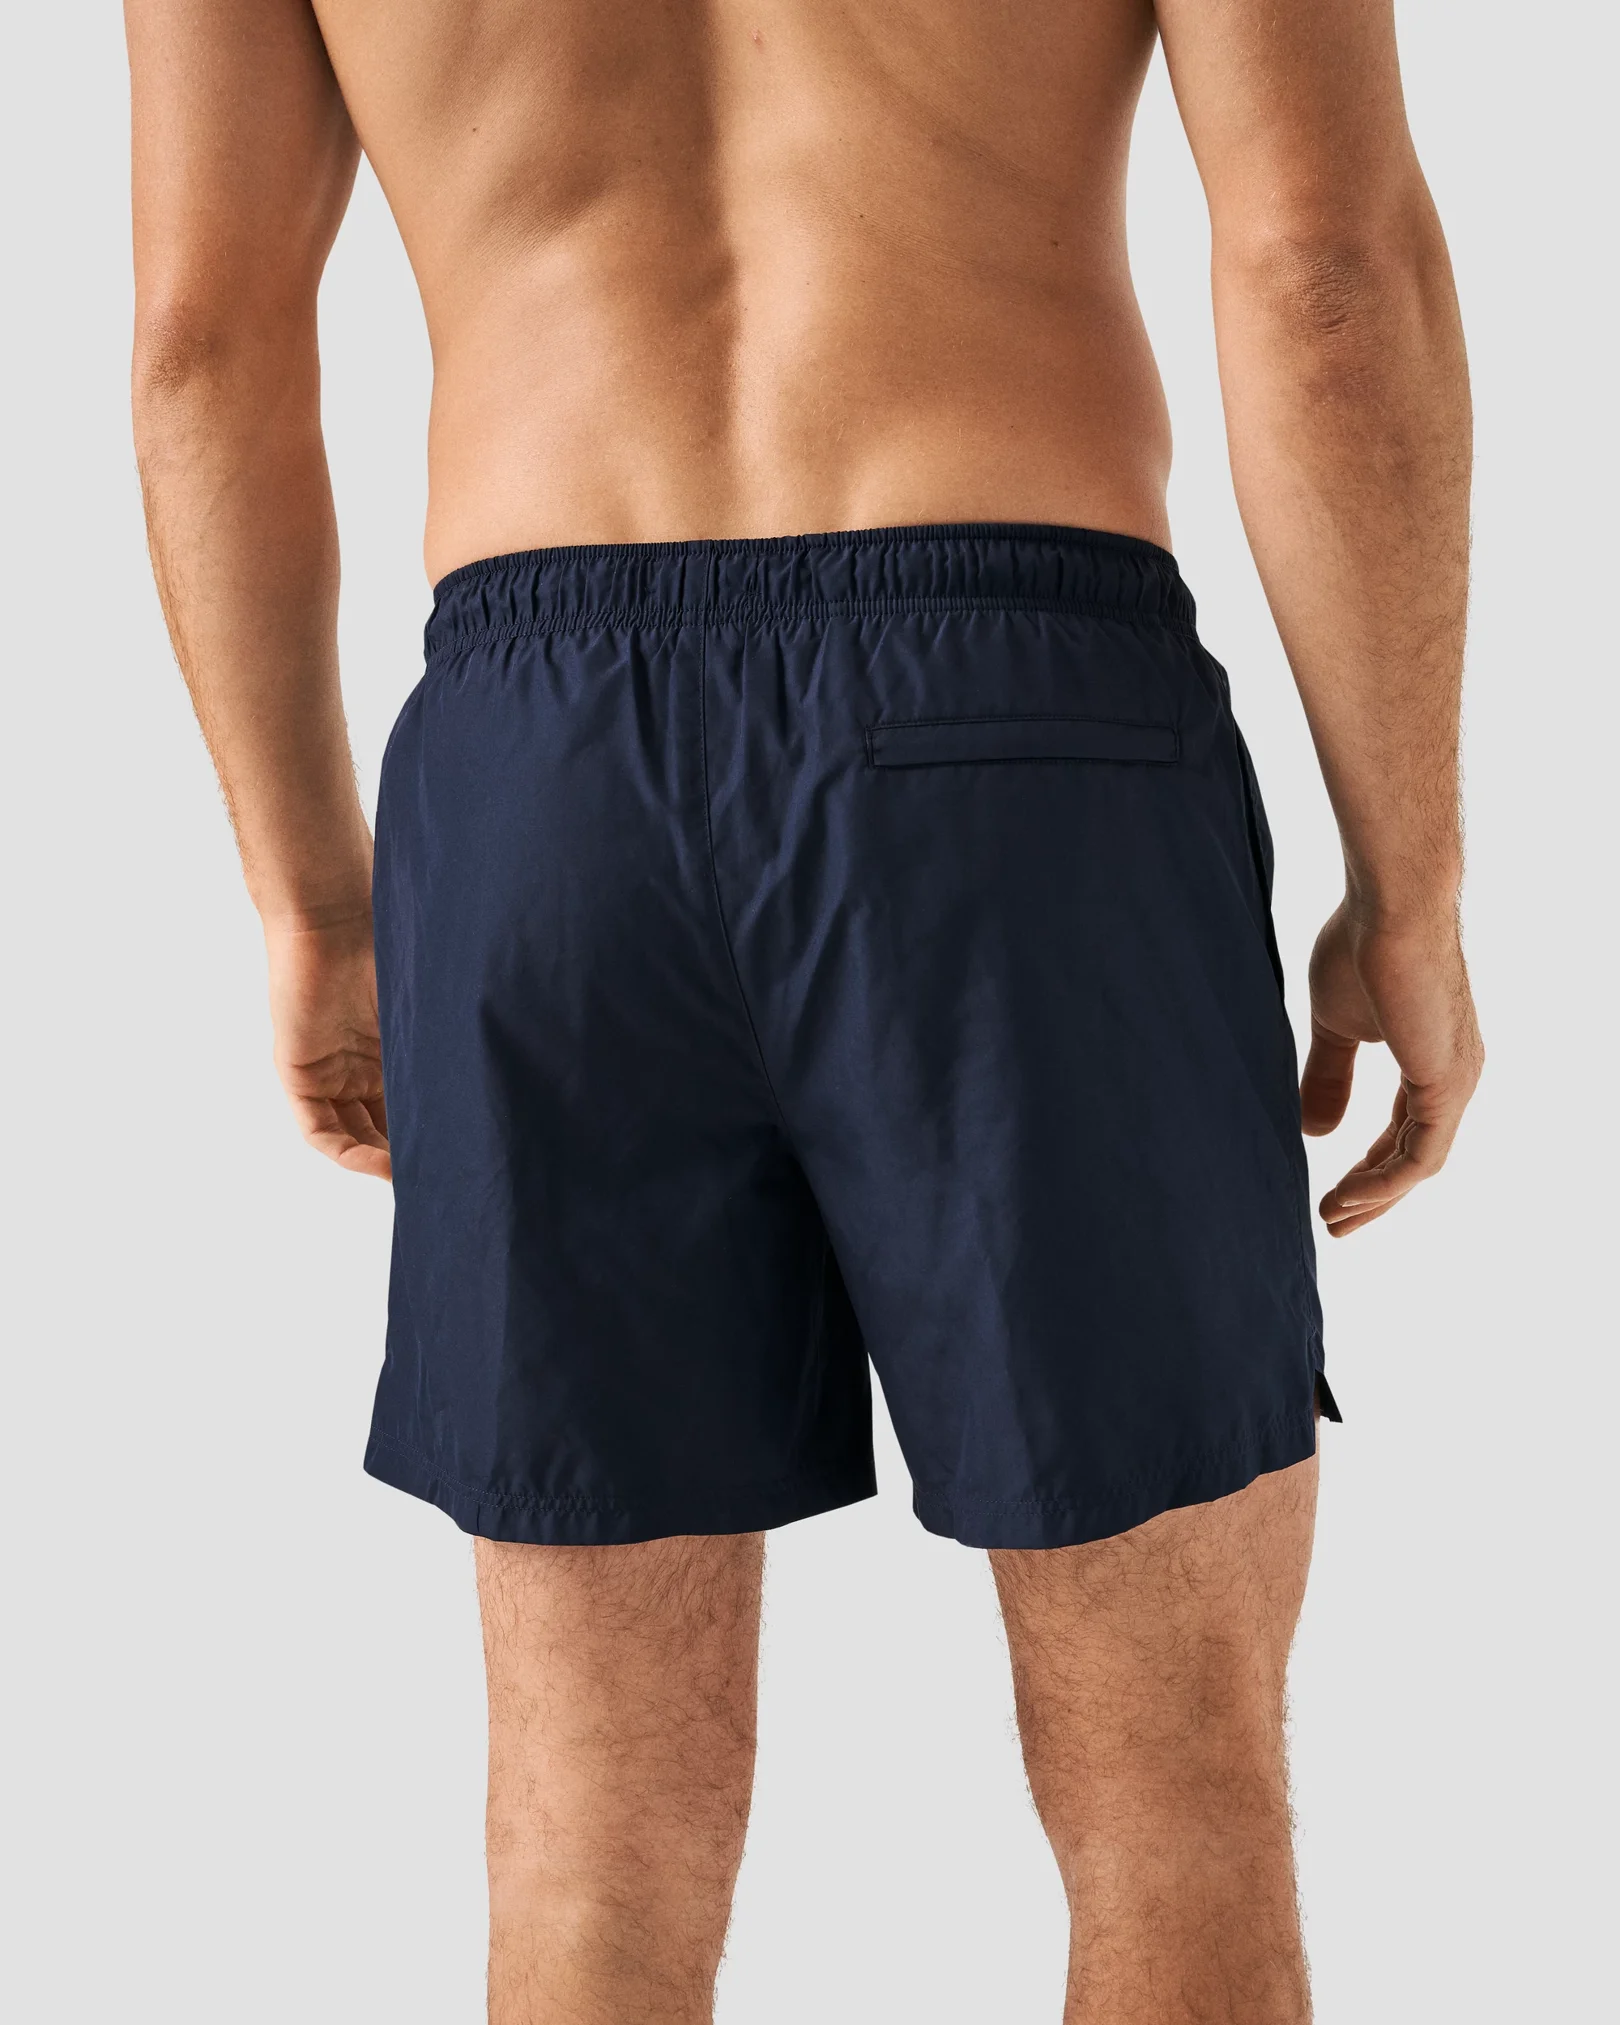 Eton - navy blue drawstring swim shorts